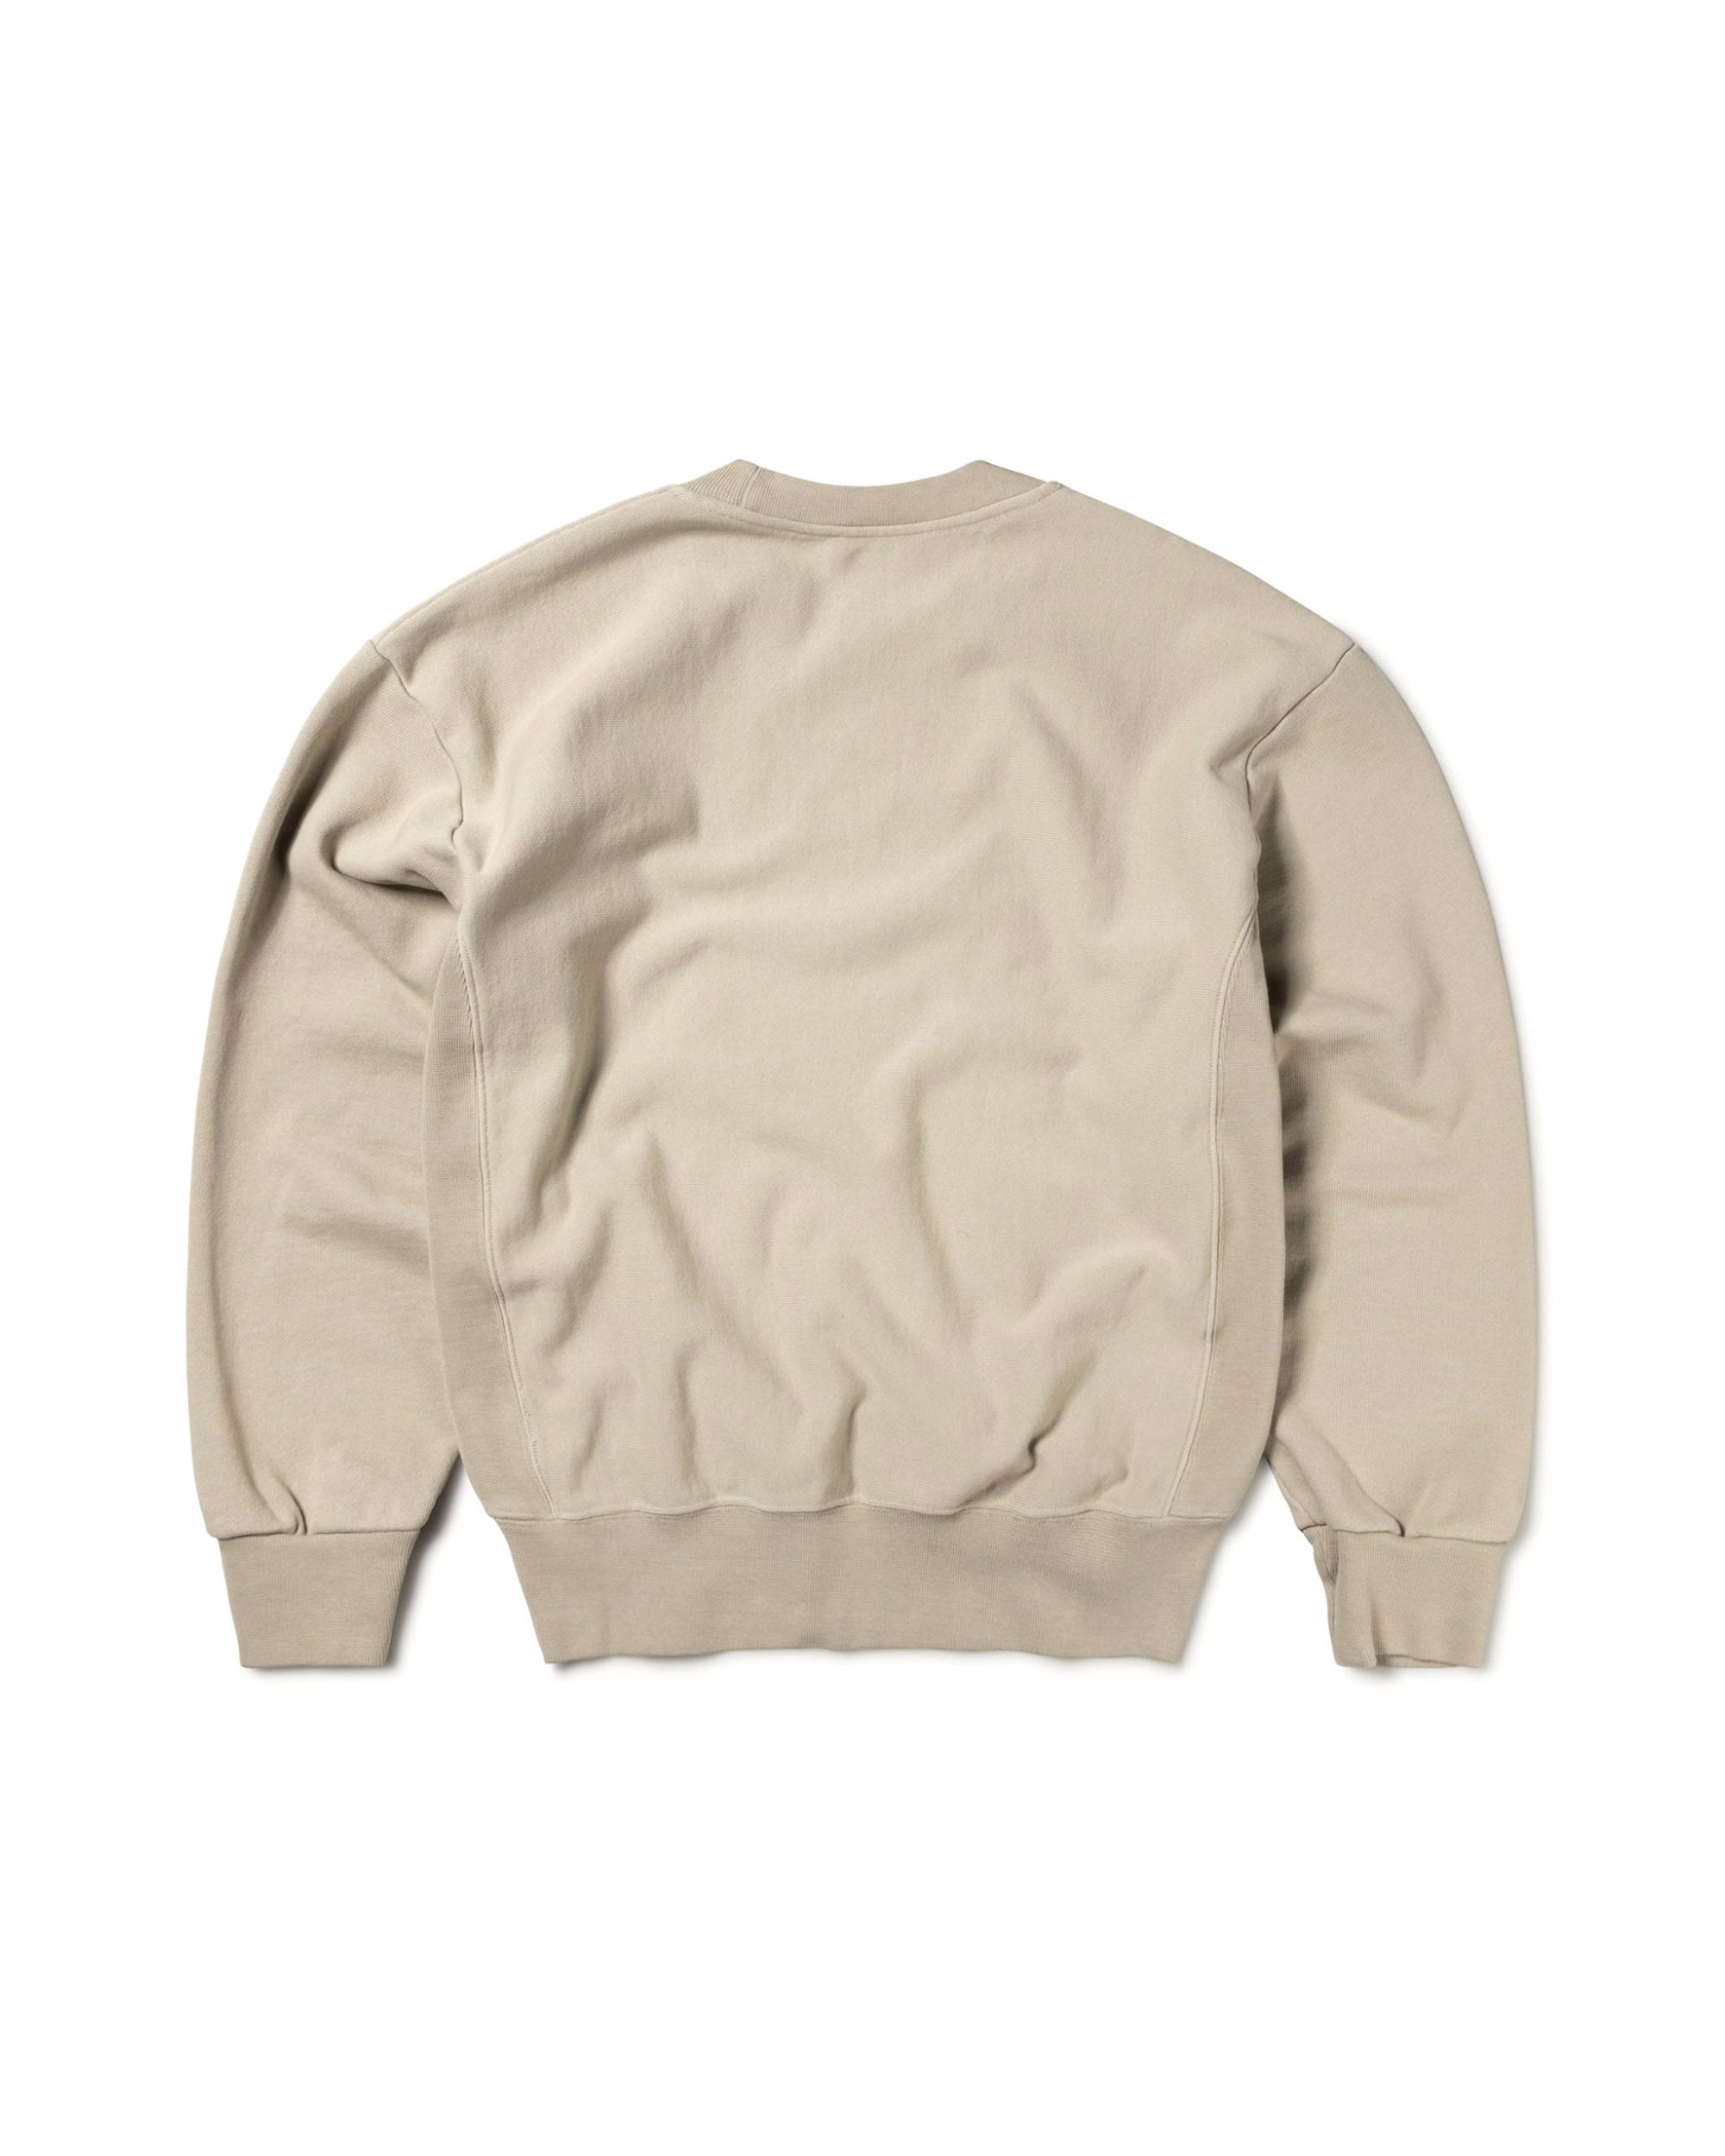 Premium Temple Sweatshirt - Agate